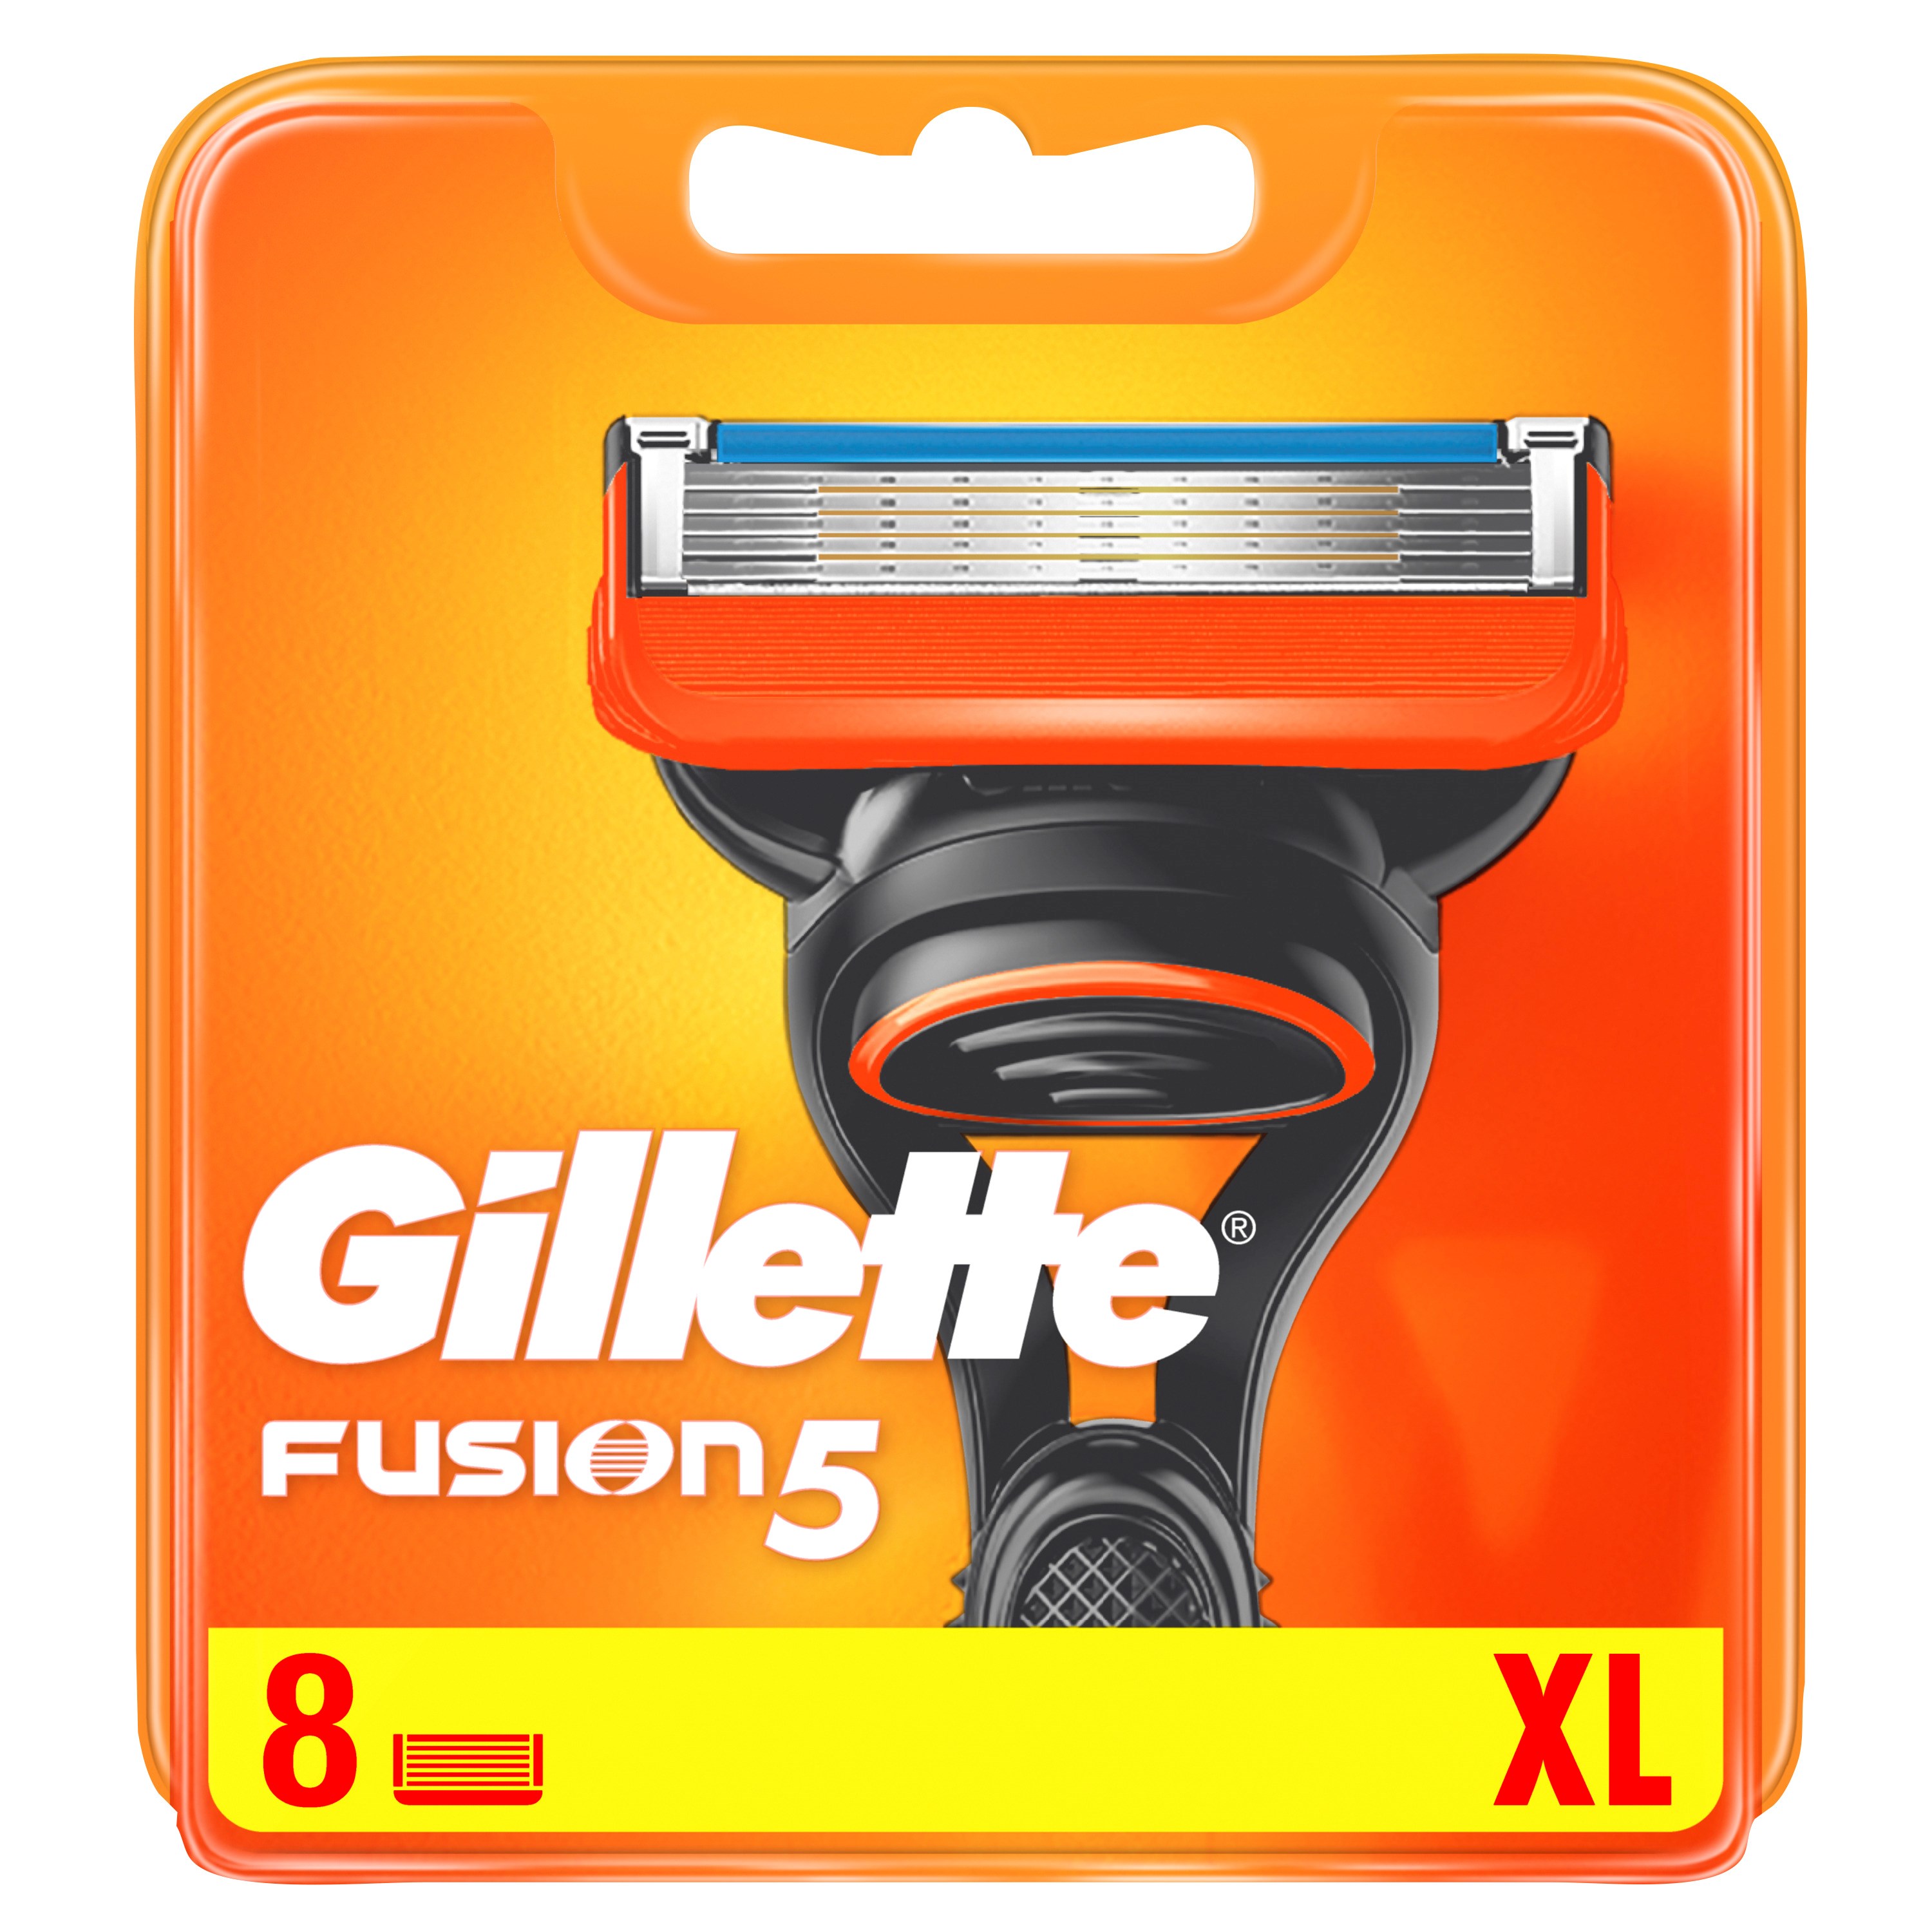 Фото - Крем / віск для депіляції Gillette Fusion5 ostrza wymienne do maszynki do golenia 